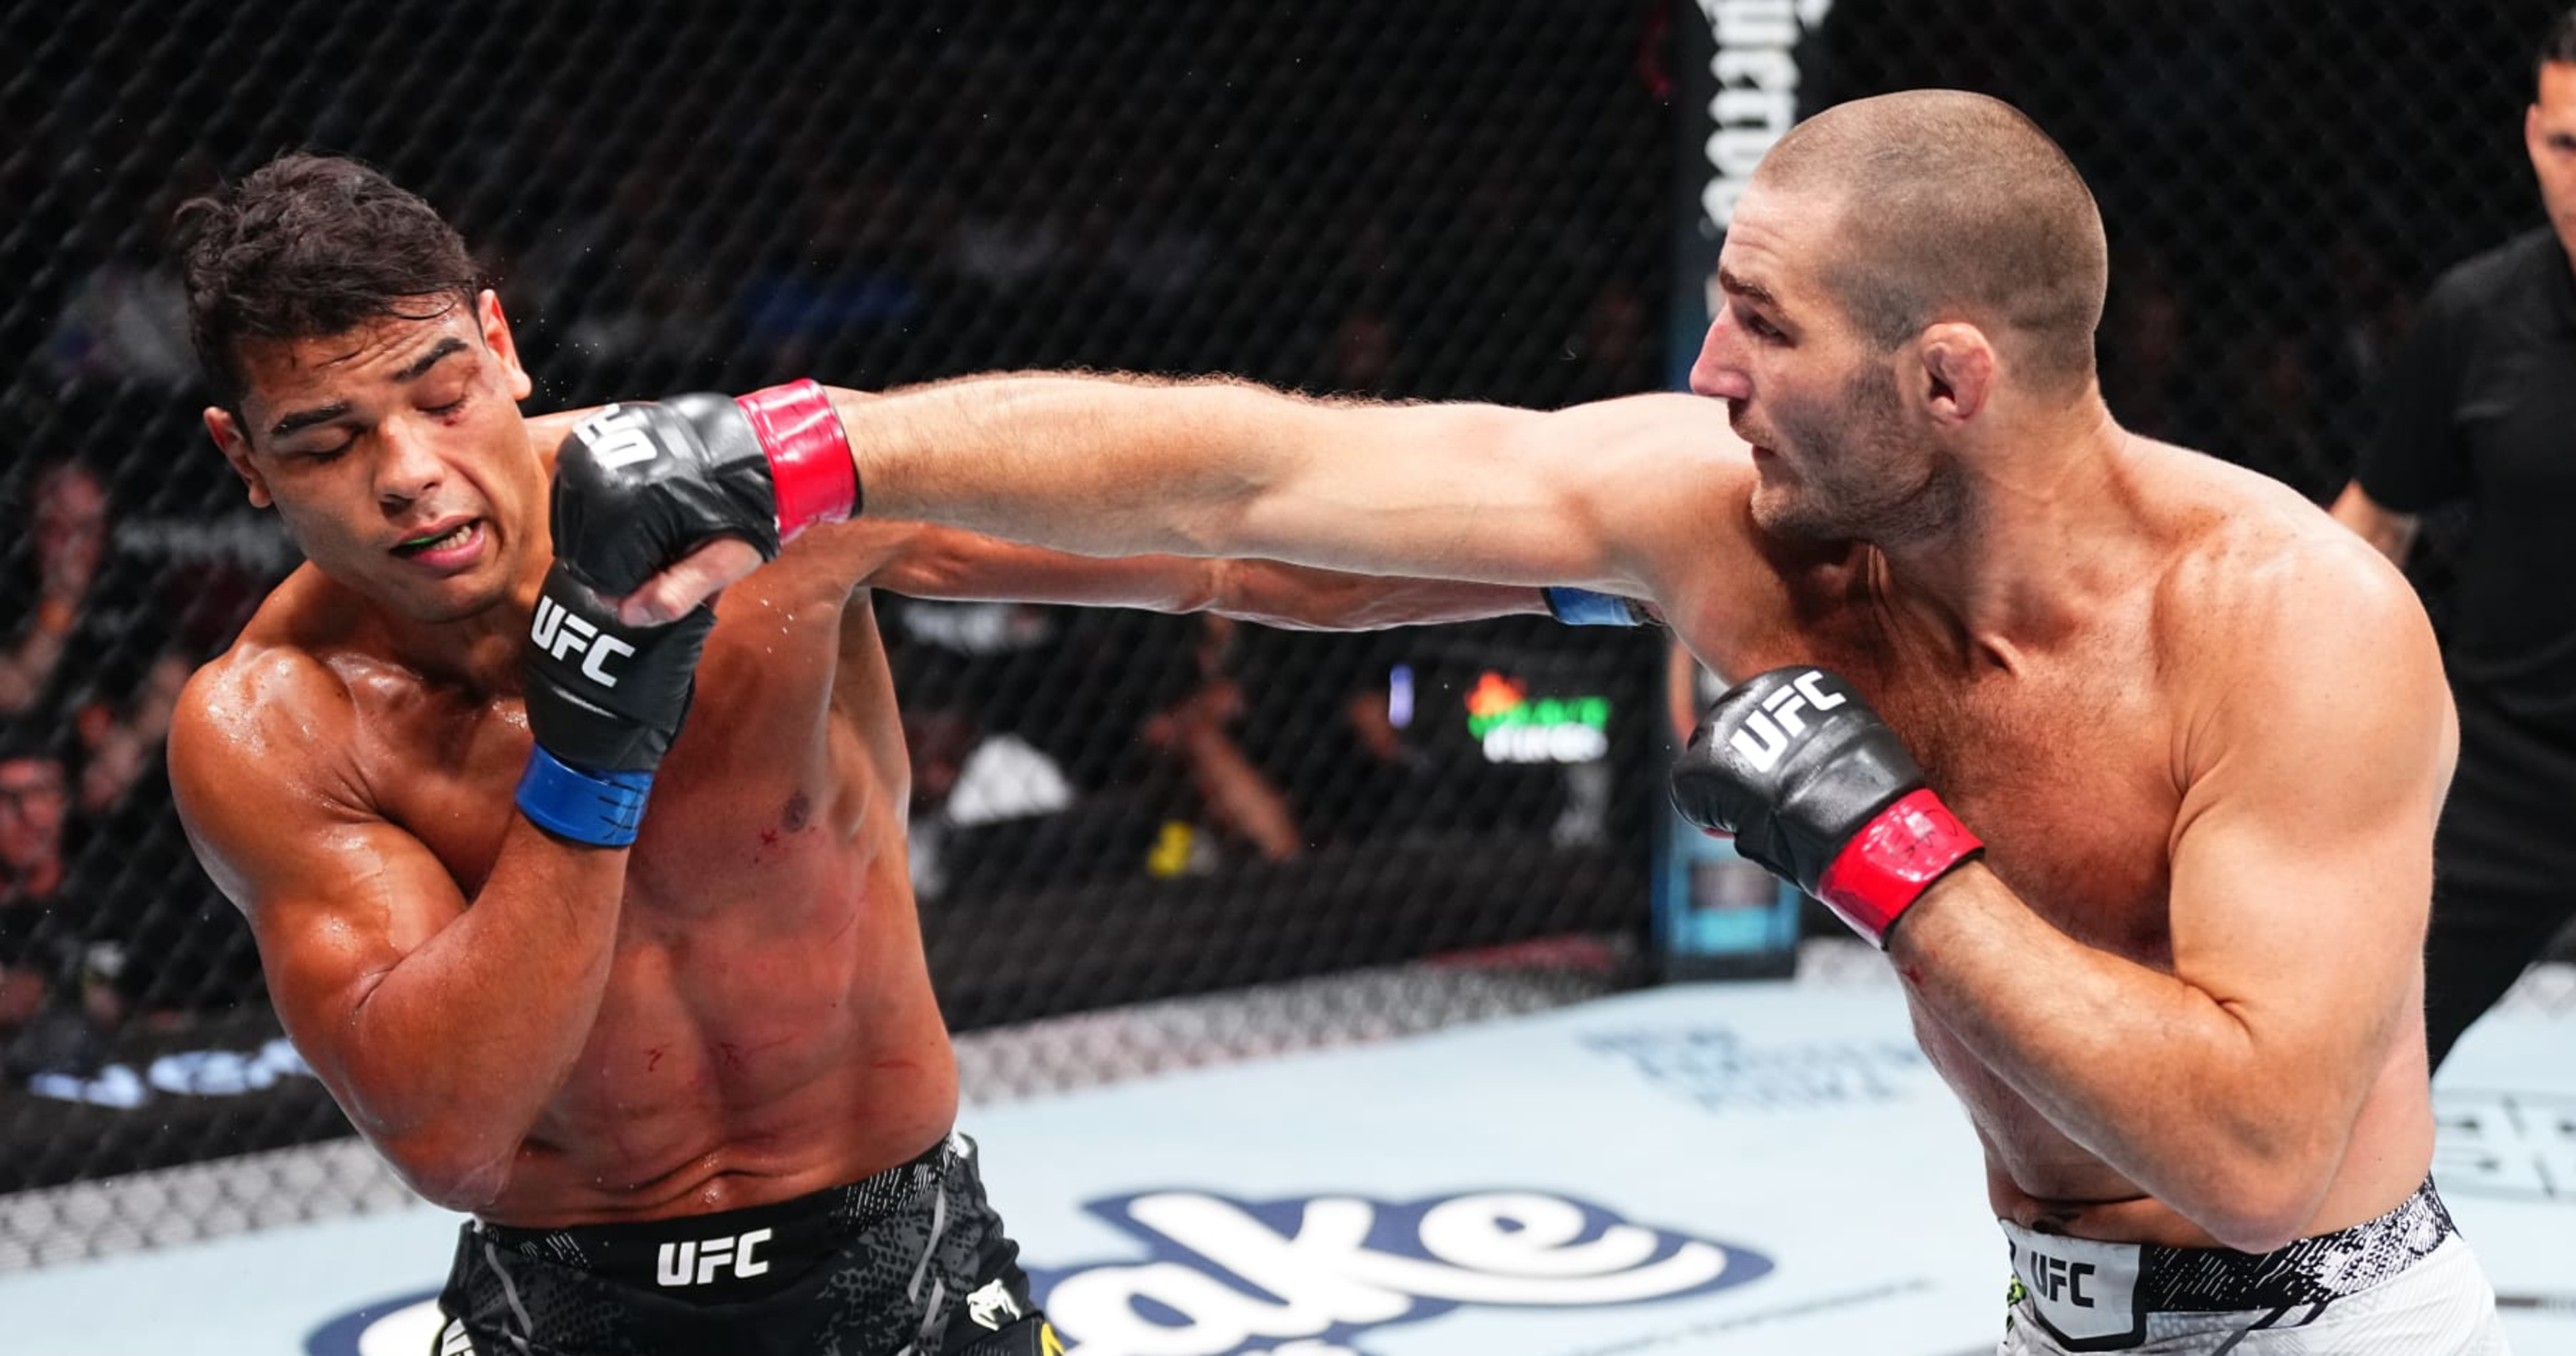 Sean Strickland bat Paulo Costa par décision à l’UFC 302 ;  Les tableaux de bord des juges dévoilés |  Actualités, scores, faits saillants, statistiques et rumeurs